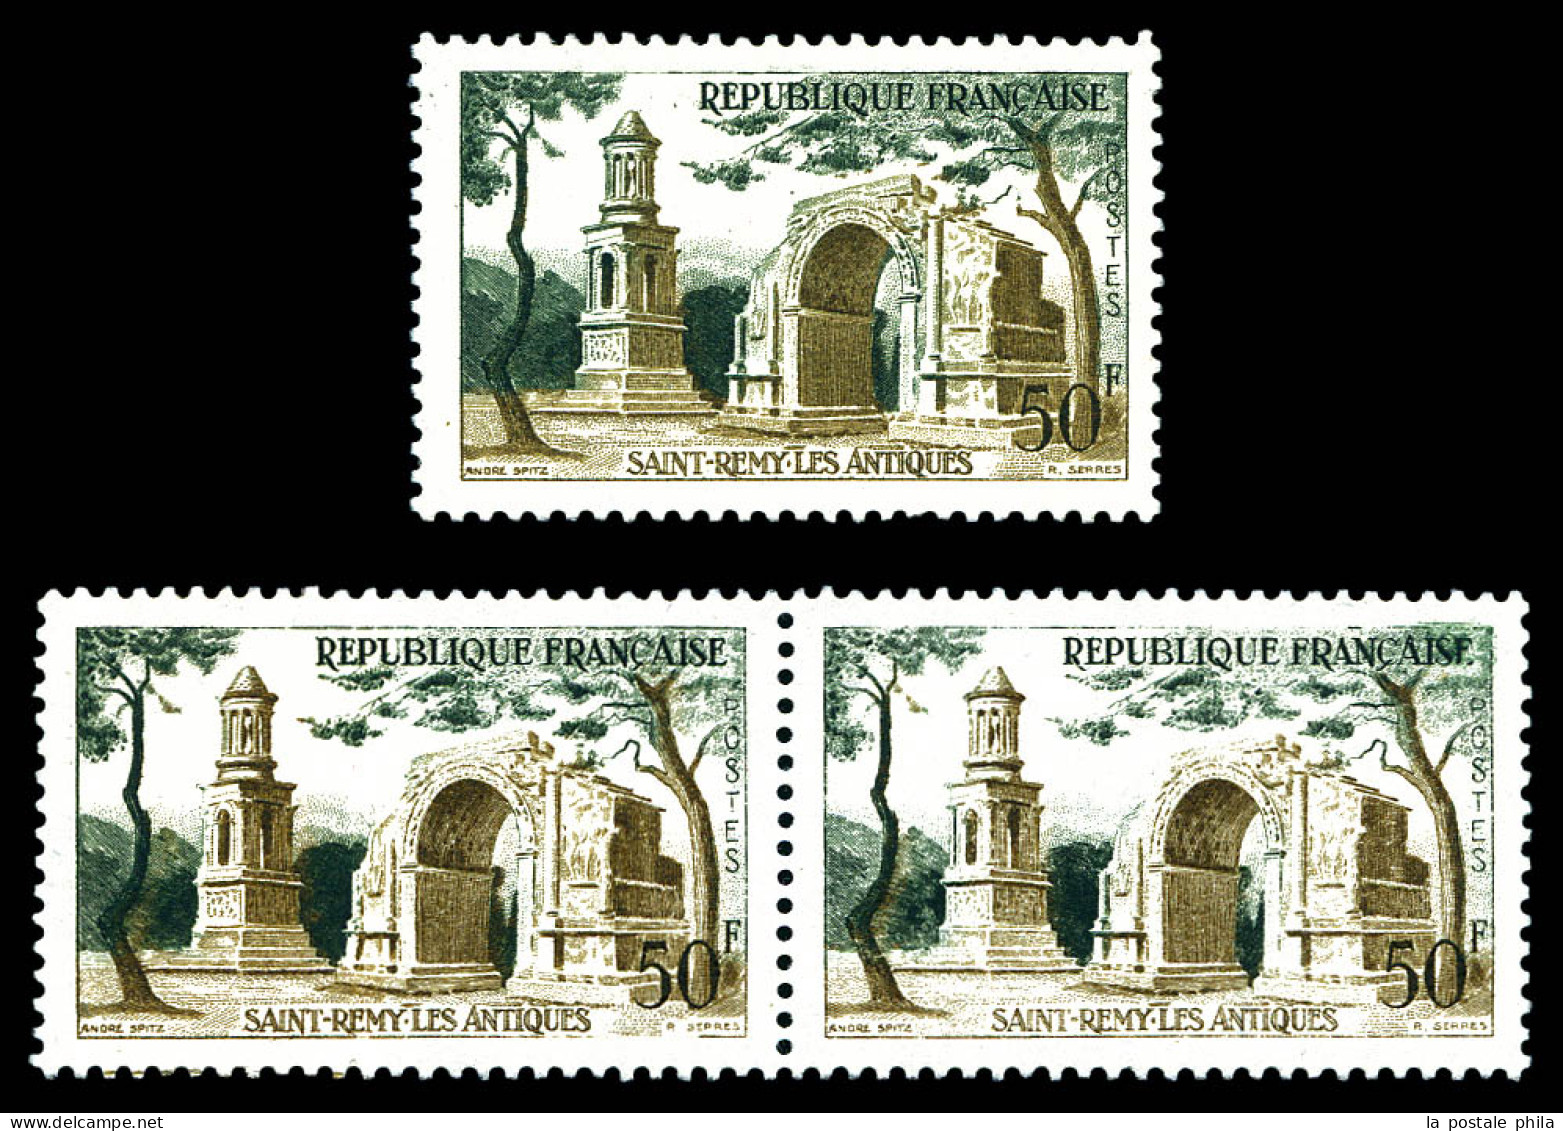 N°1130b, 50f St Rémy Les Antiques: Impression Sur Raccord En Paire + Arche Verte. SUP. R. (signé Brun/certificat)  Quali - Unused Stamps